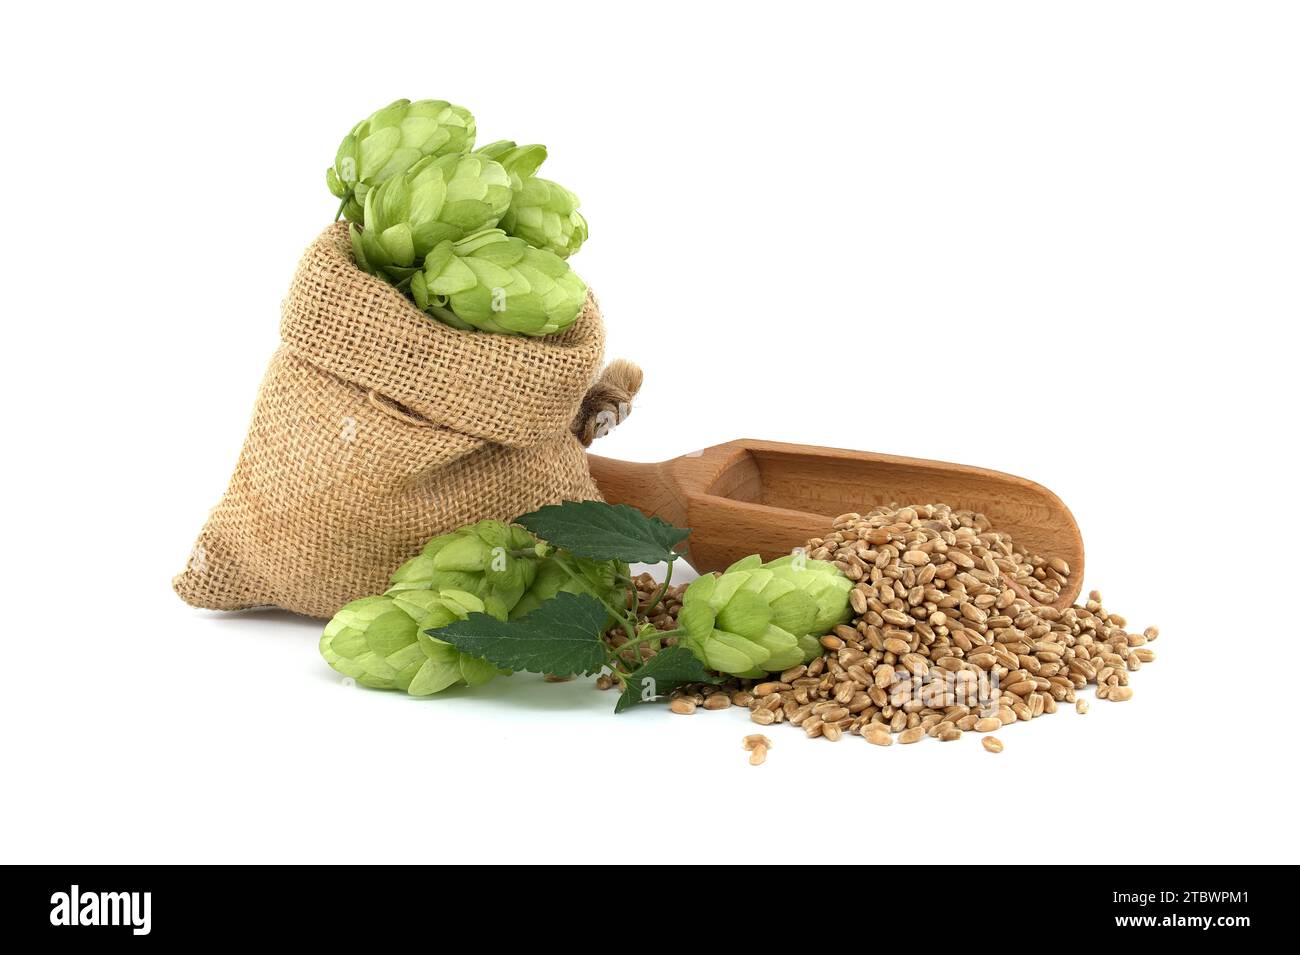 Cônes de houblon vert frais se déversant d'un sac hessien près des graines de grain de blé et pelle en bois isolé sur un fond blanc, composants de la bière Banque D'Images